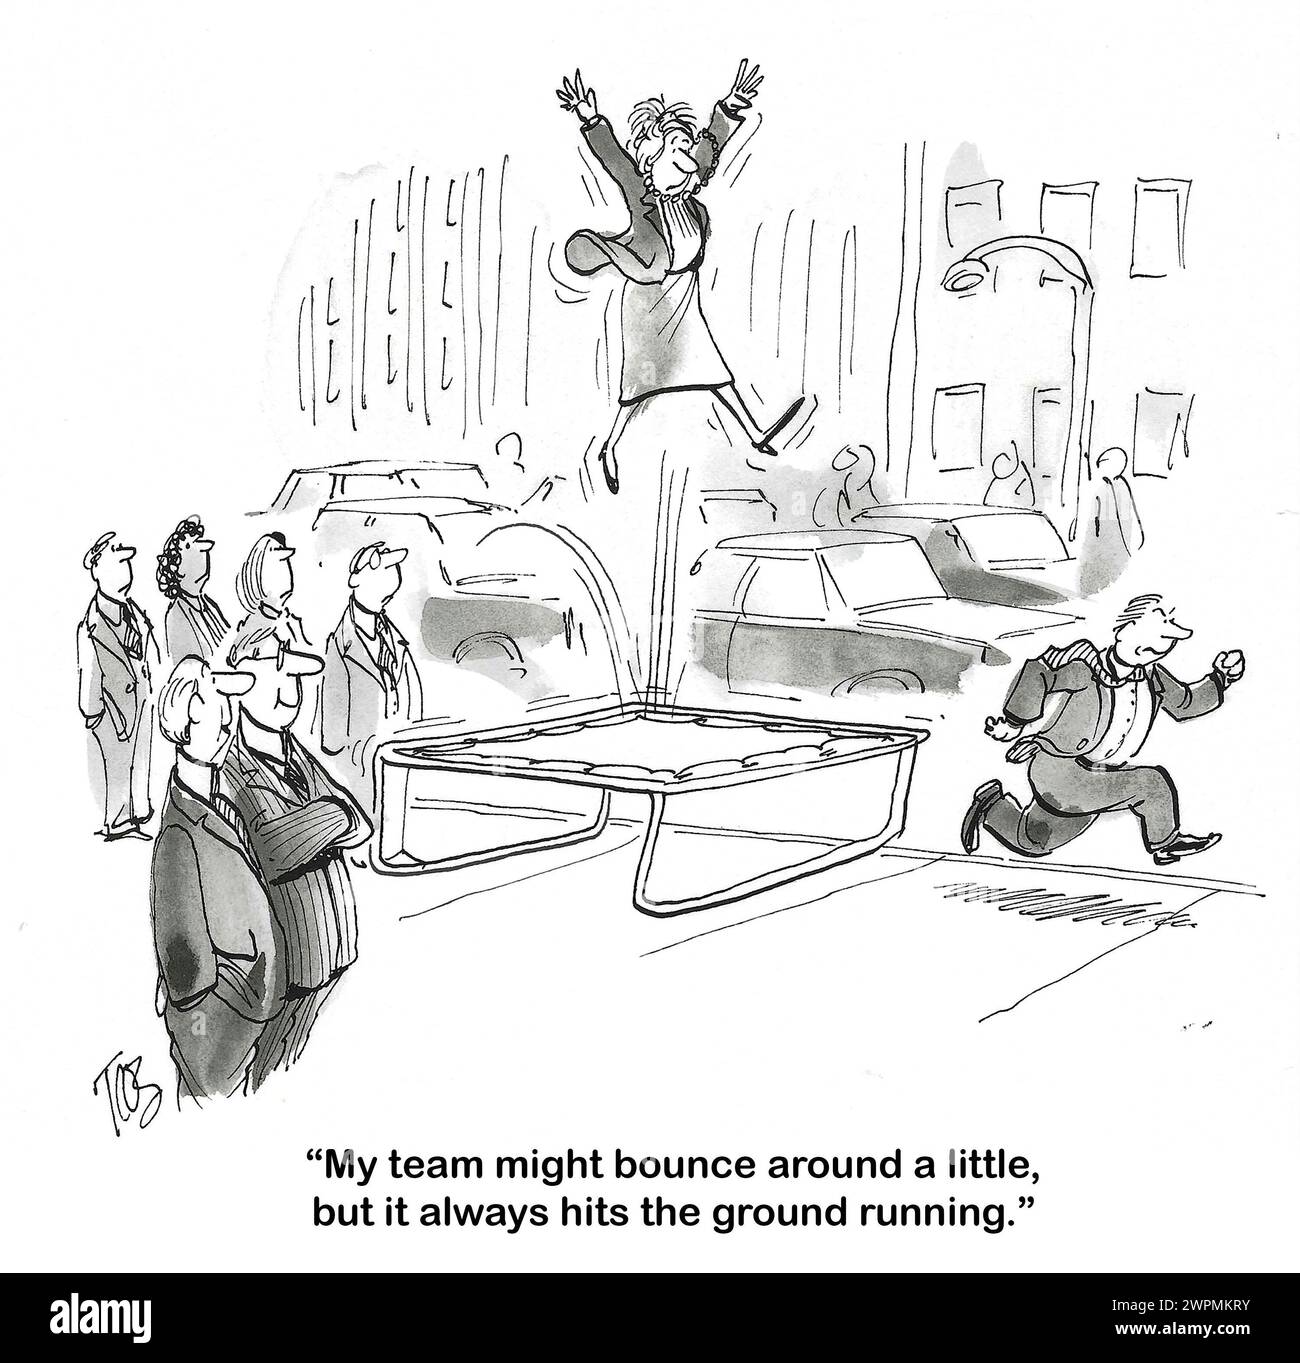 BW-Cartoon eines Business-Teams, das auf einem riesigen Trampolin springt, aber sie haben den Boden laufen lassen und sich vorbereitet. Stockfoto